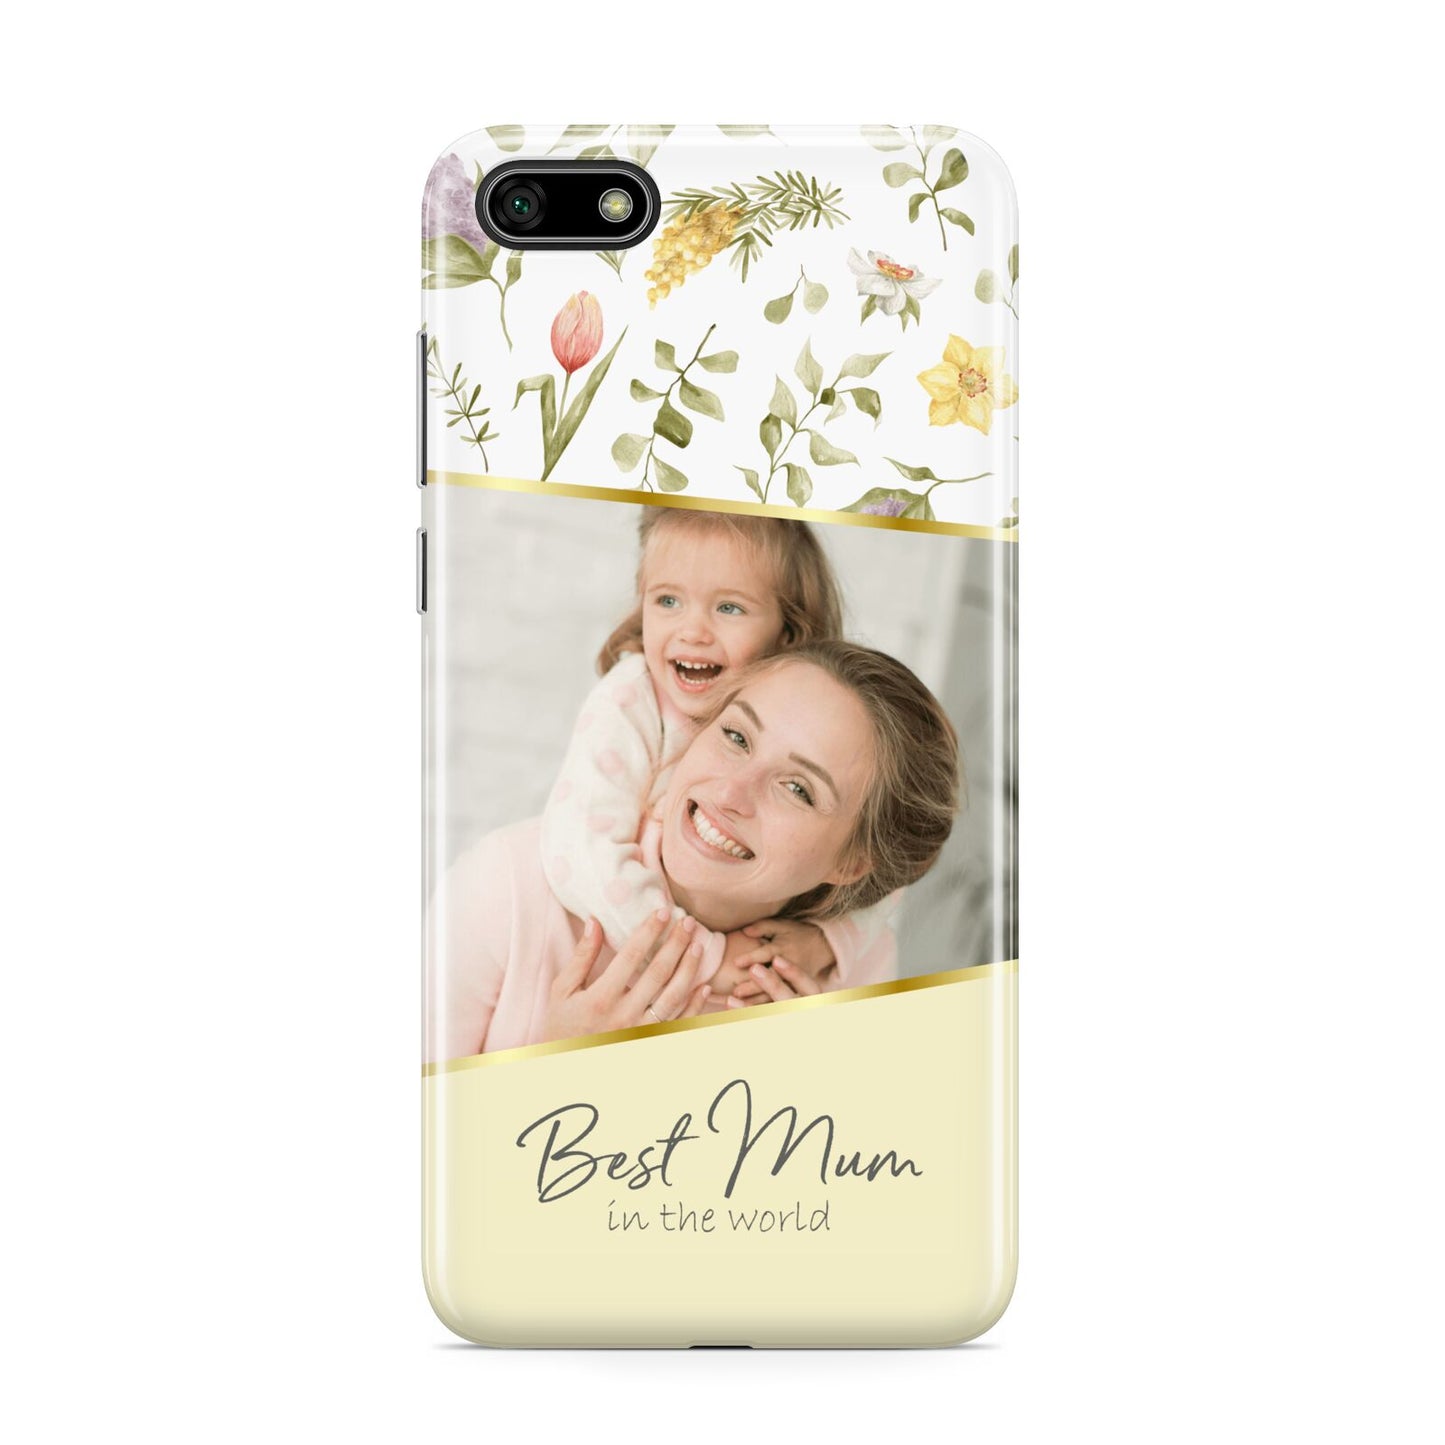 Personalised Best Mum Huawei Y5 Prime 2018 Phone Case